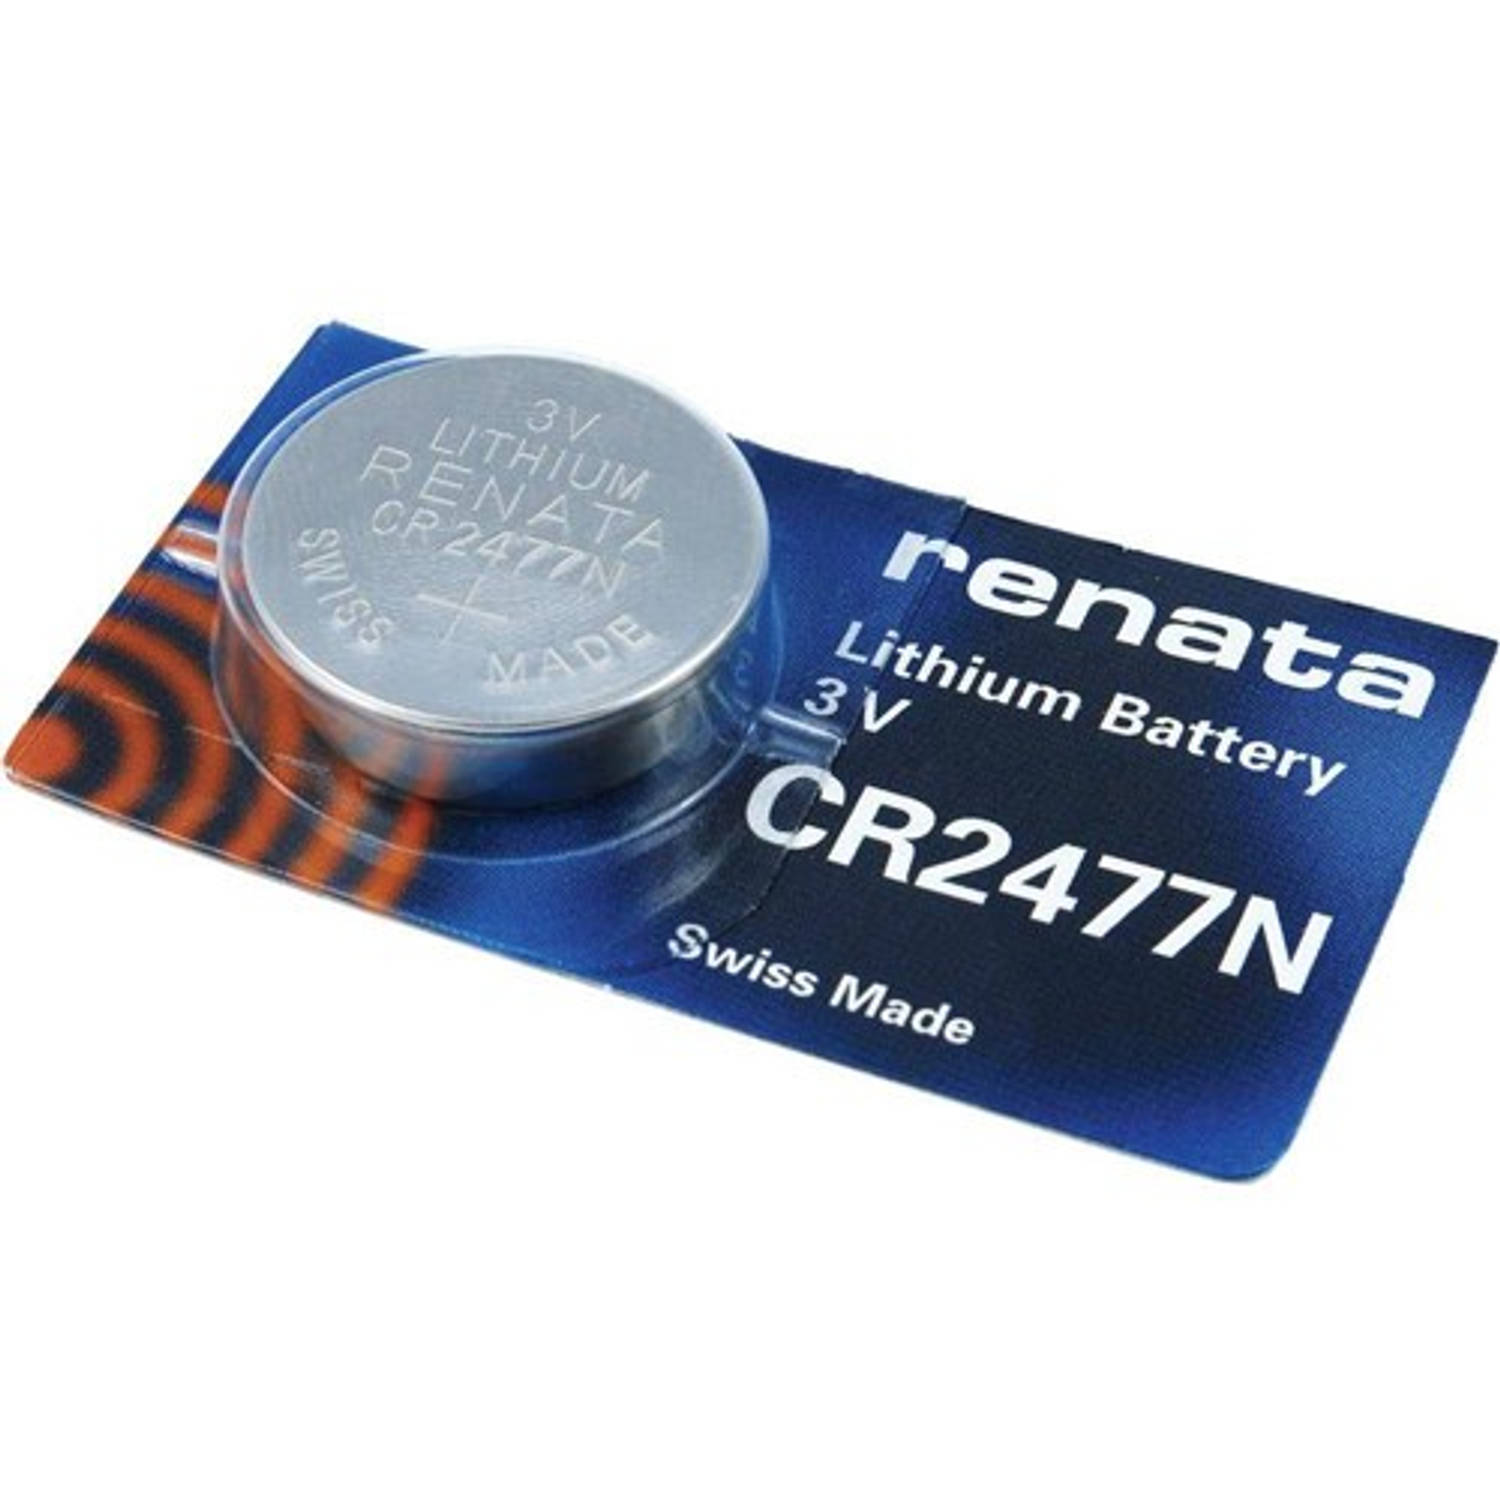 Lithium Batterij Renata Cr2477n (Blister) 1 Stuk